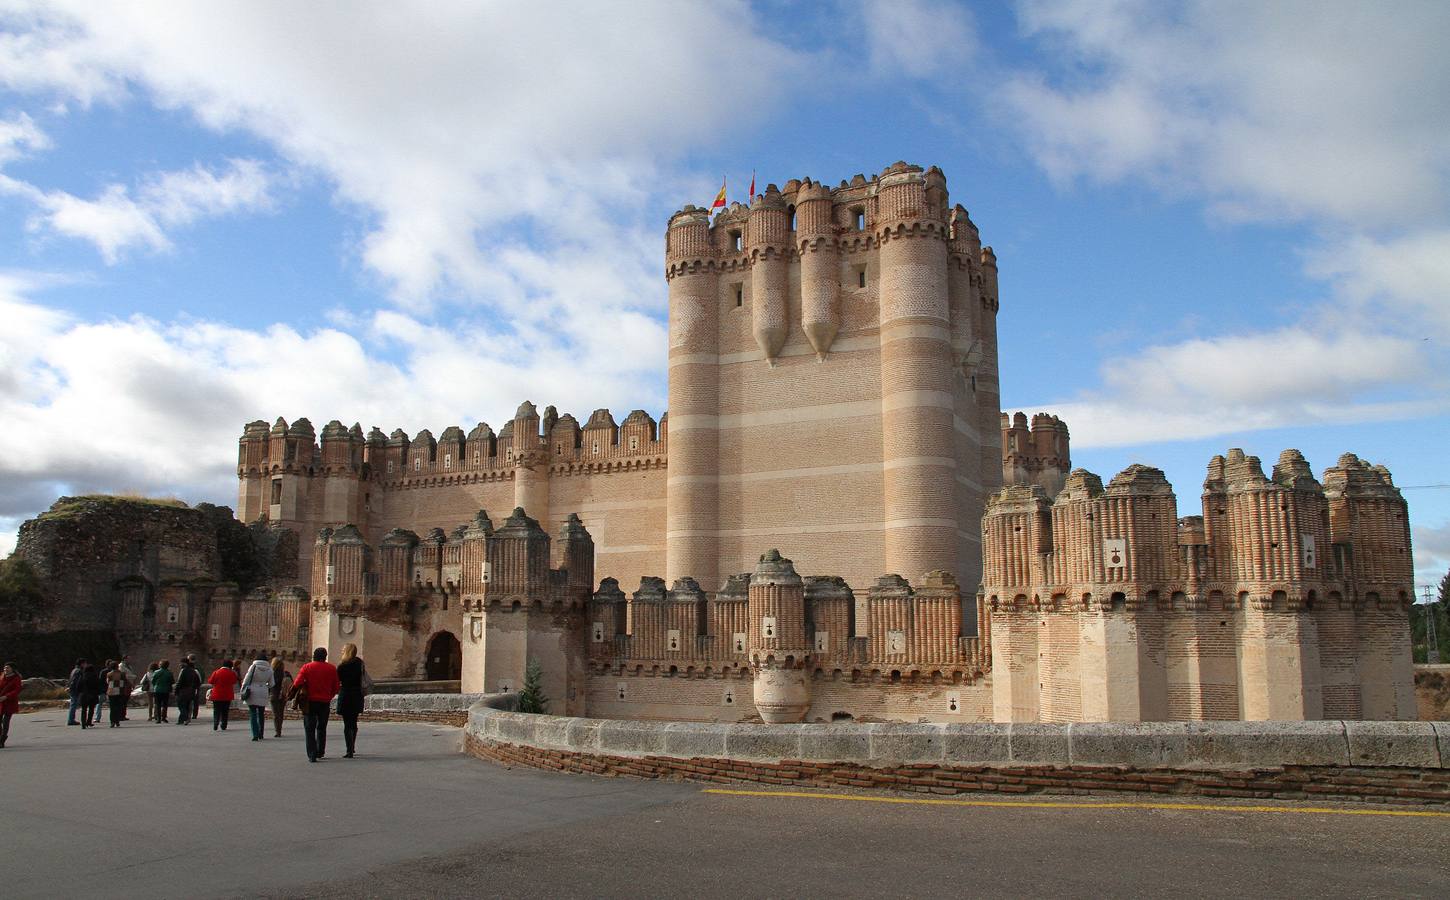 Castillo de Coca (Segovia). Fue construido en el siglo XV y está considerado por su propio municipio una de las mejores muestras del gótico-mudéjar español. Propiedad de la Casa de Alba, cedido al ministerio de Agricultura de España hasta el año 2054.